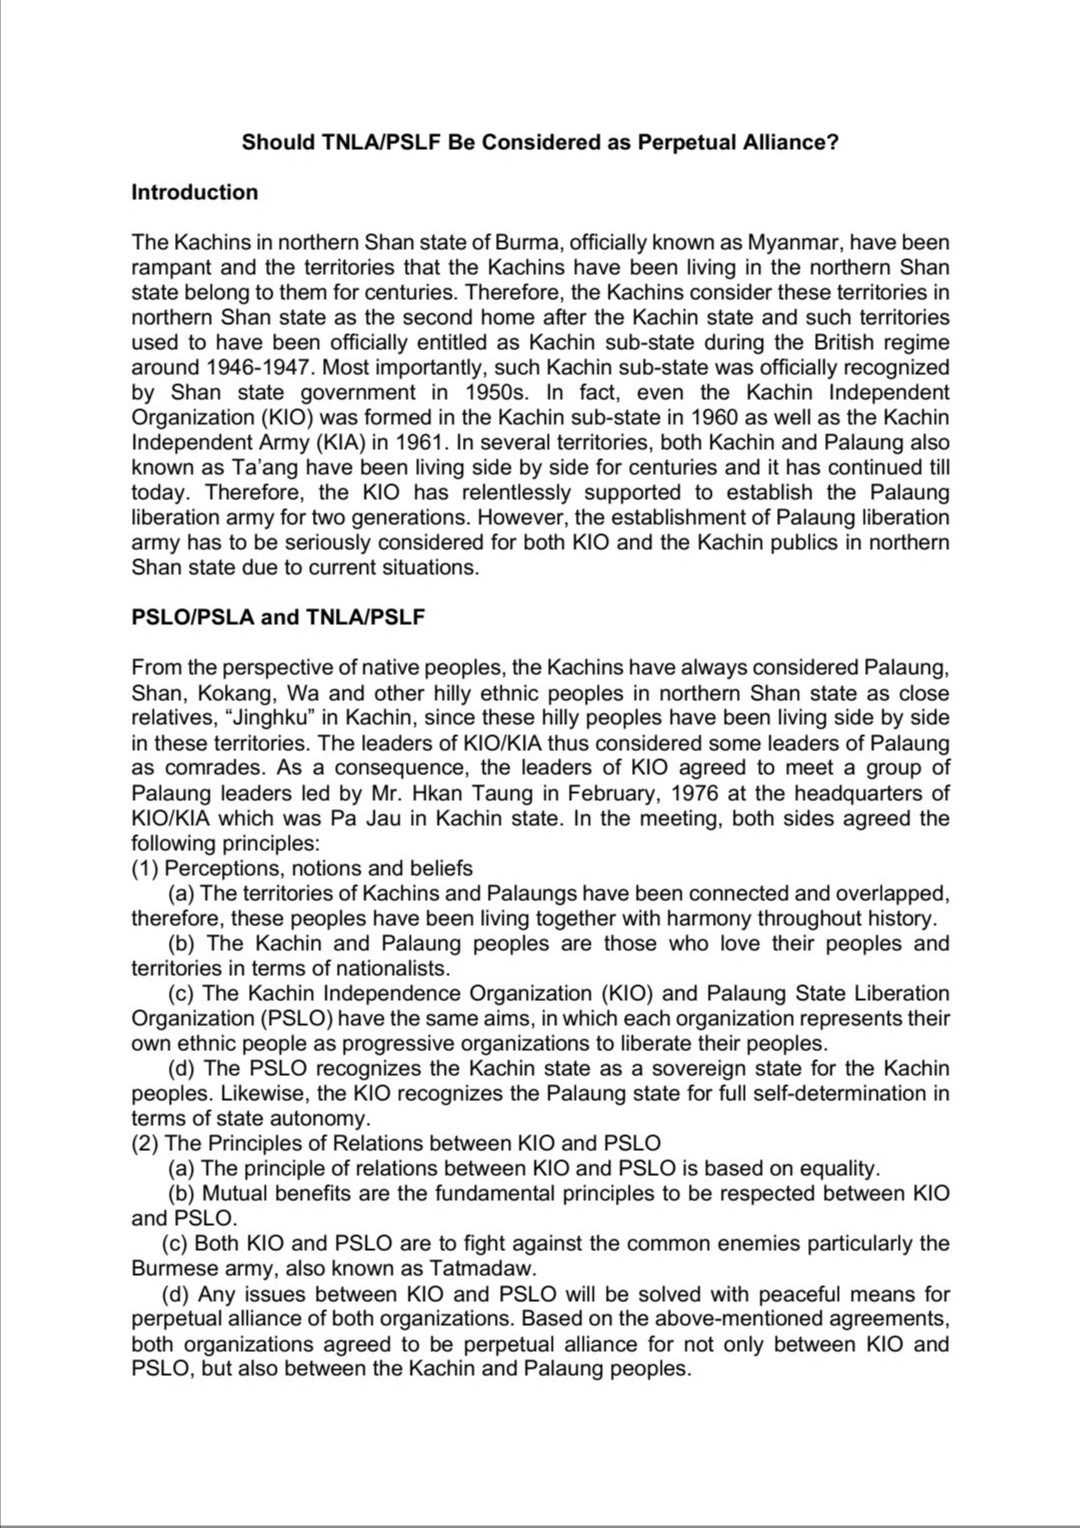   德昂民族解放军/崩龙邦解放阵线（TNLA/PSLF）  应被视为克钦独立组织的永久同盟吗？